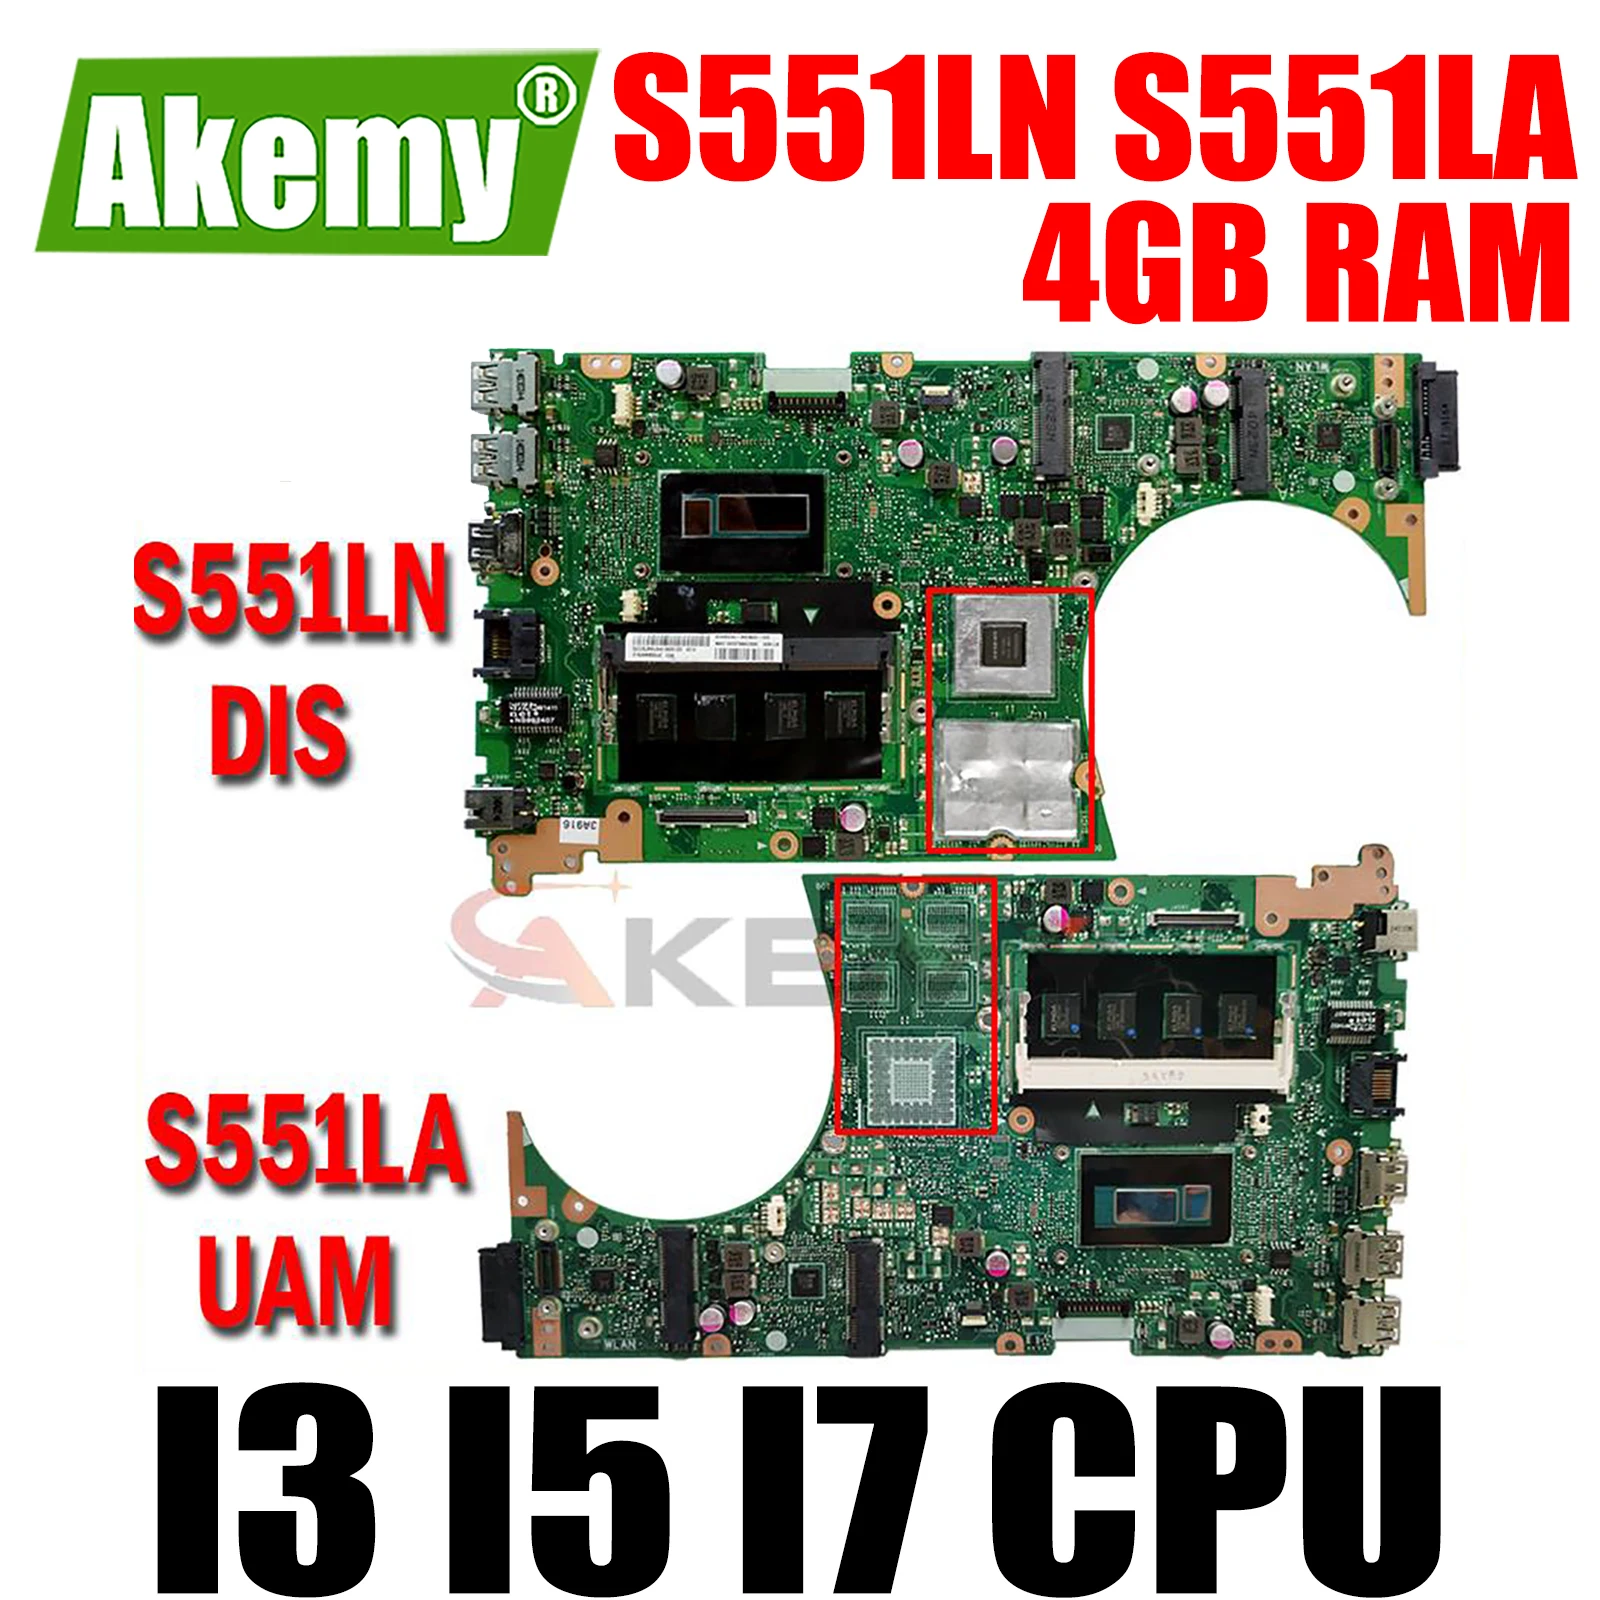 

S551LN S551LA 4GB RAM I3 I5 I7 CPU GT740M GT840M Mainboard for ASUS K551L K551LB K551LN S551L S551LB R553L Laptop Motherboard